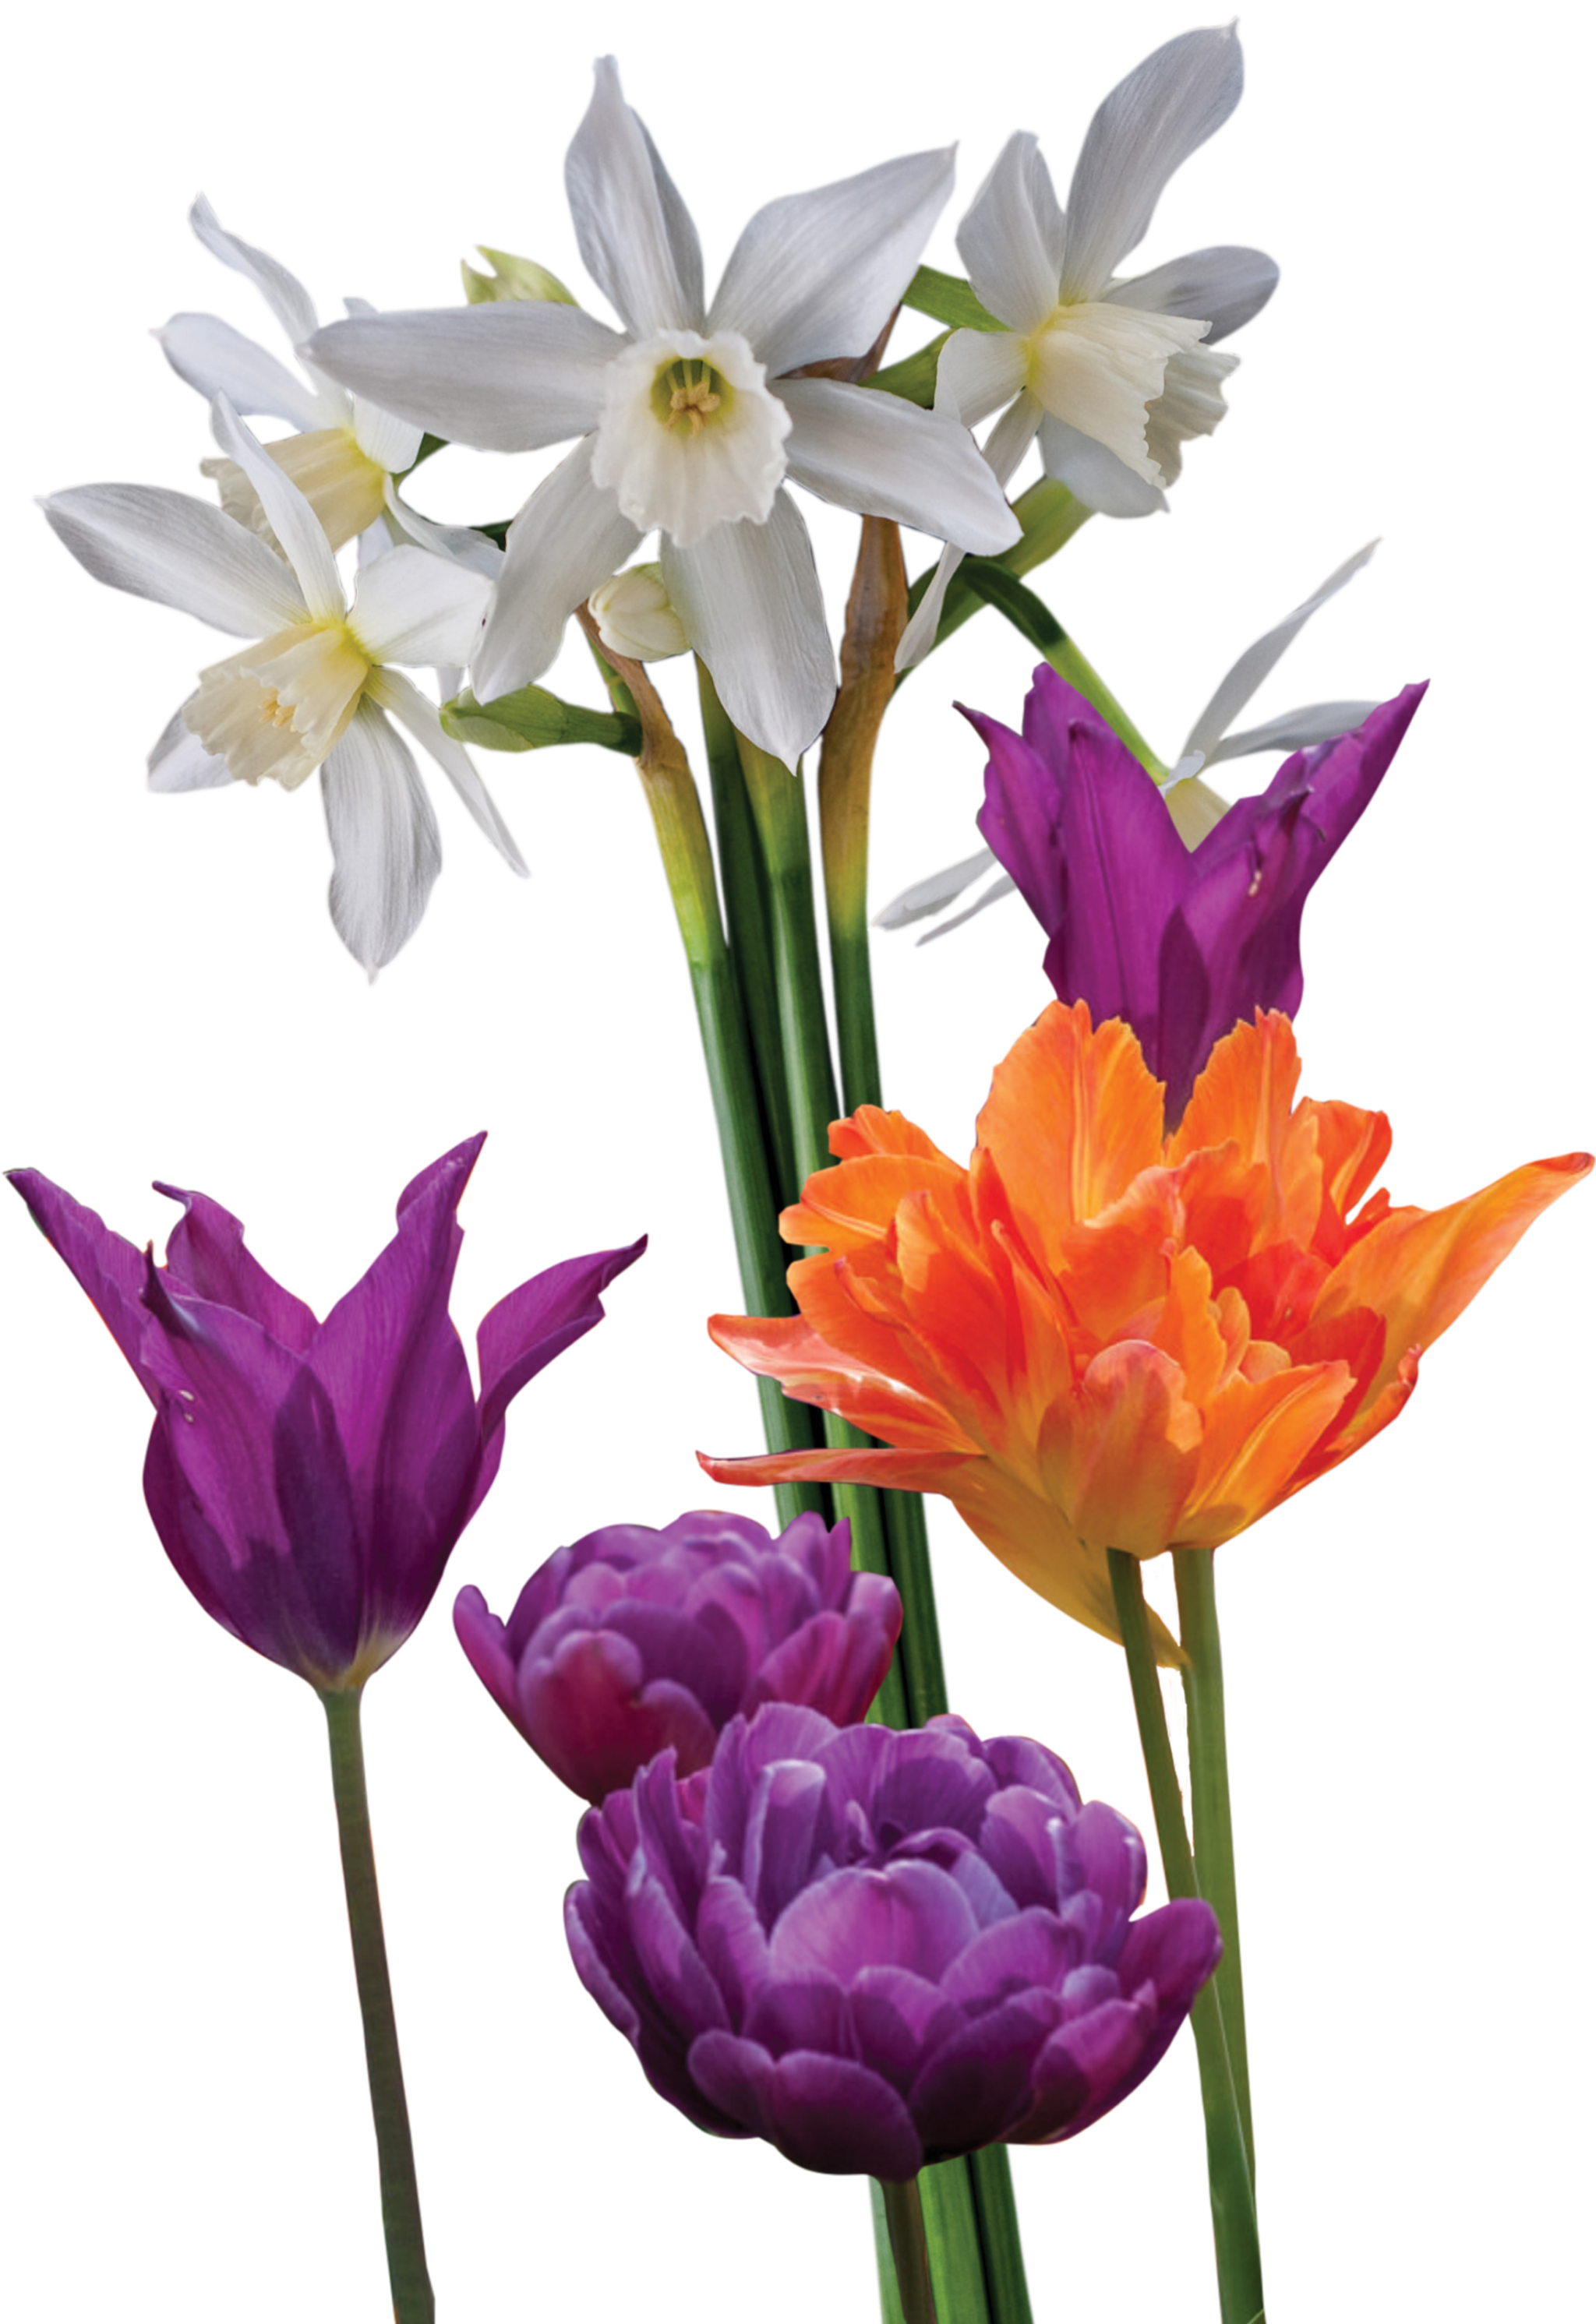 white daffodils and orange and purple tulips